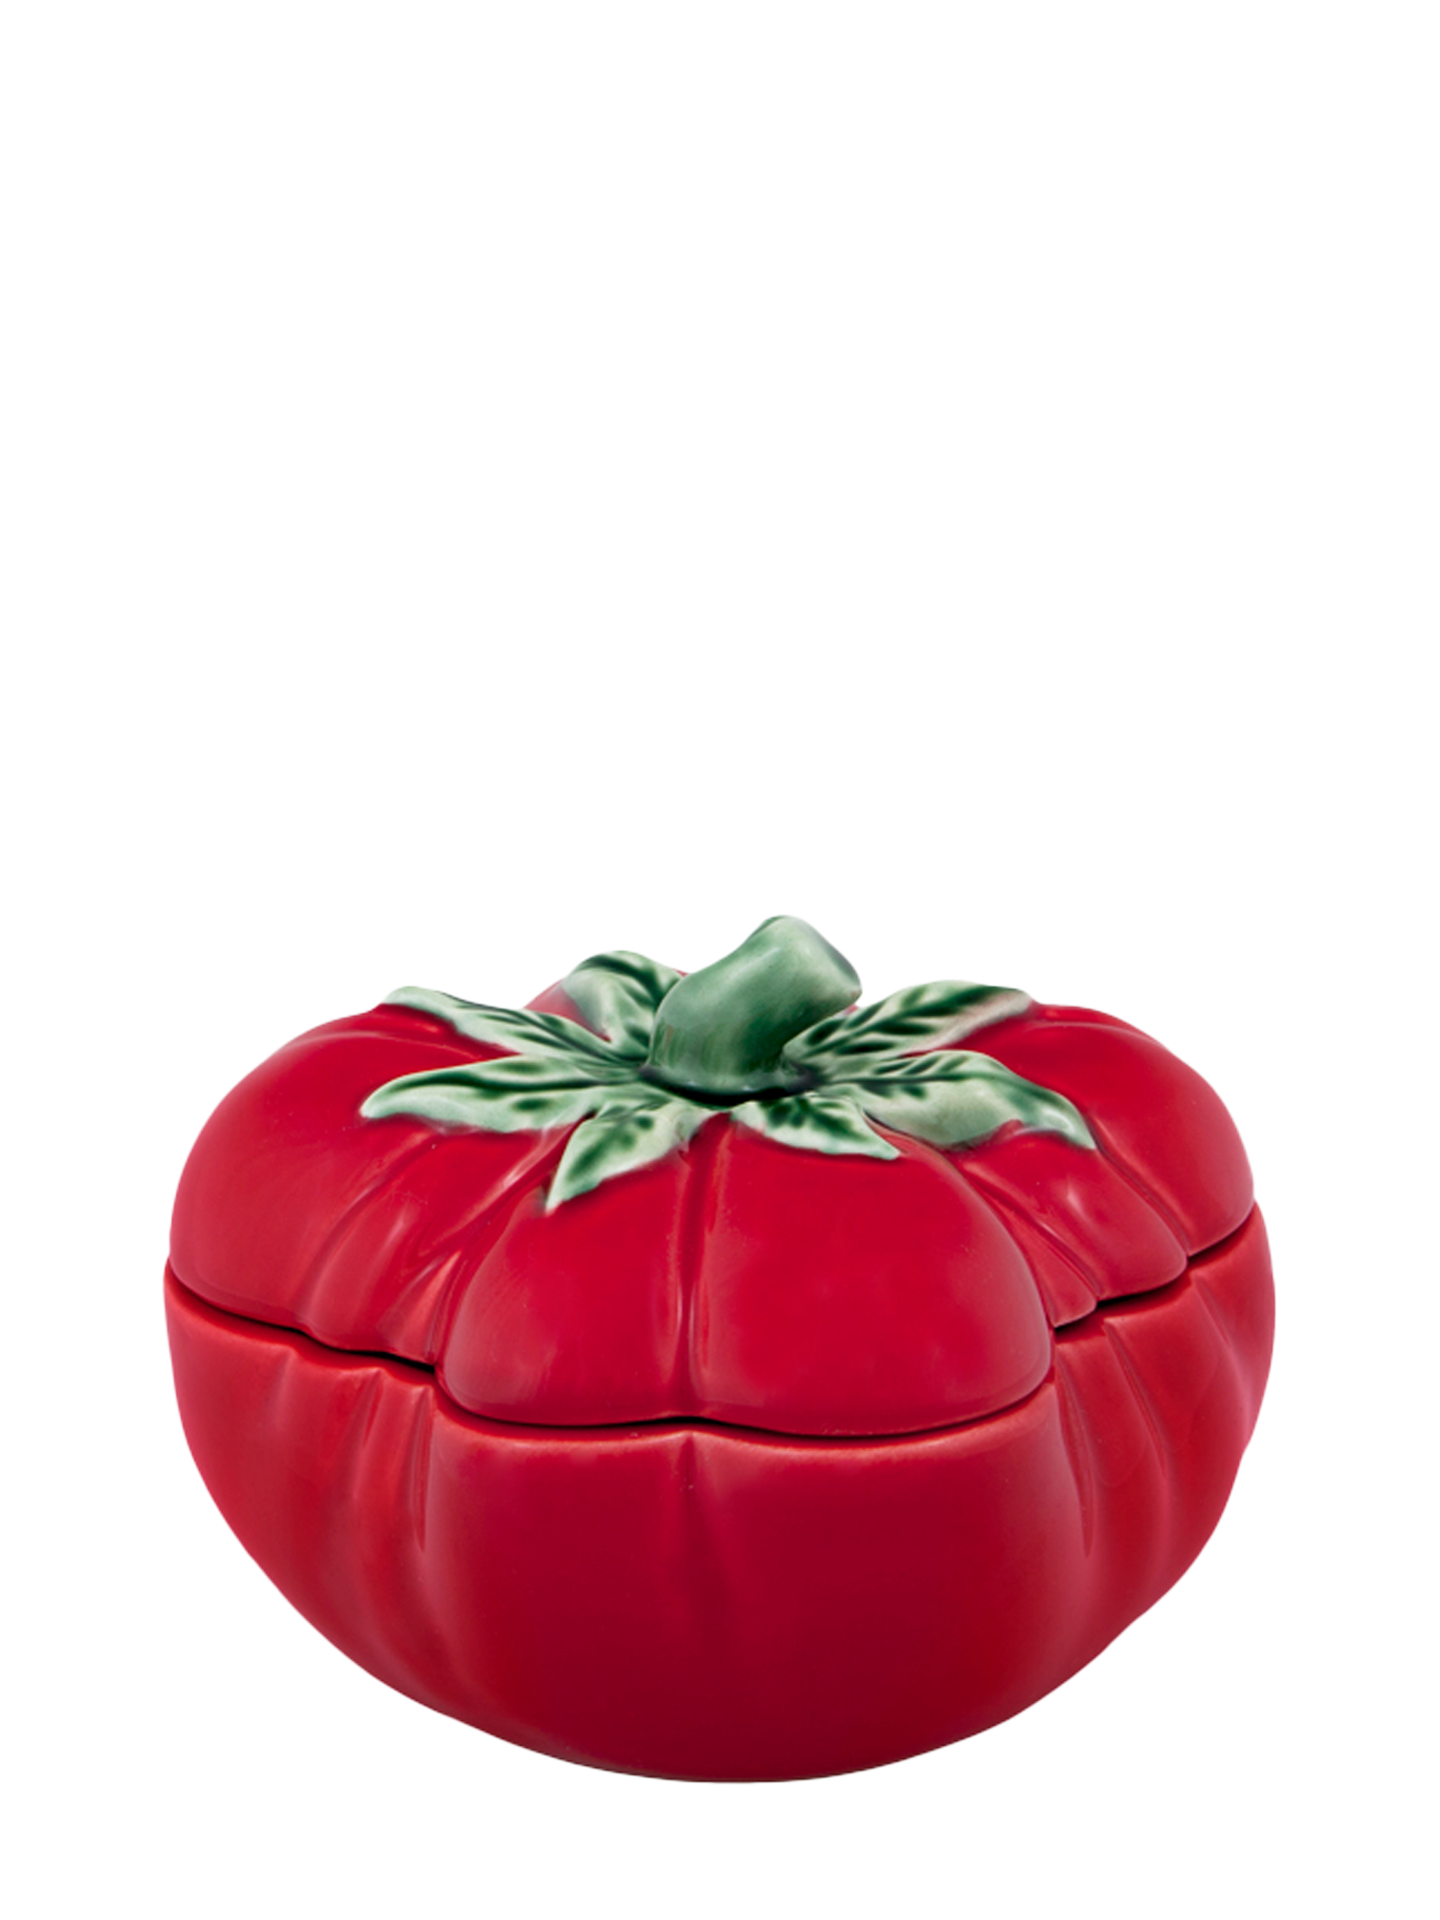 Big Tomato Jar (15,5 cm)